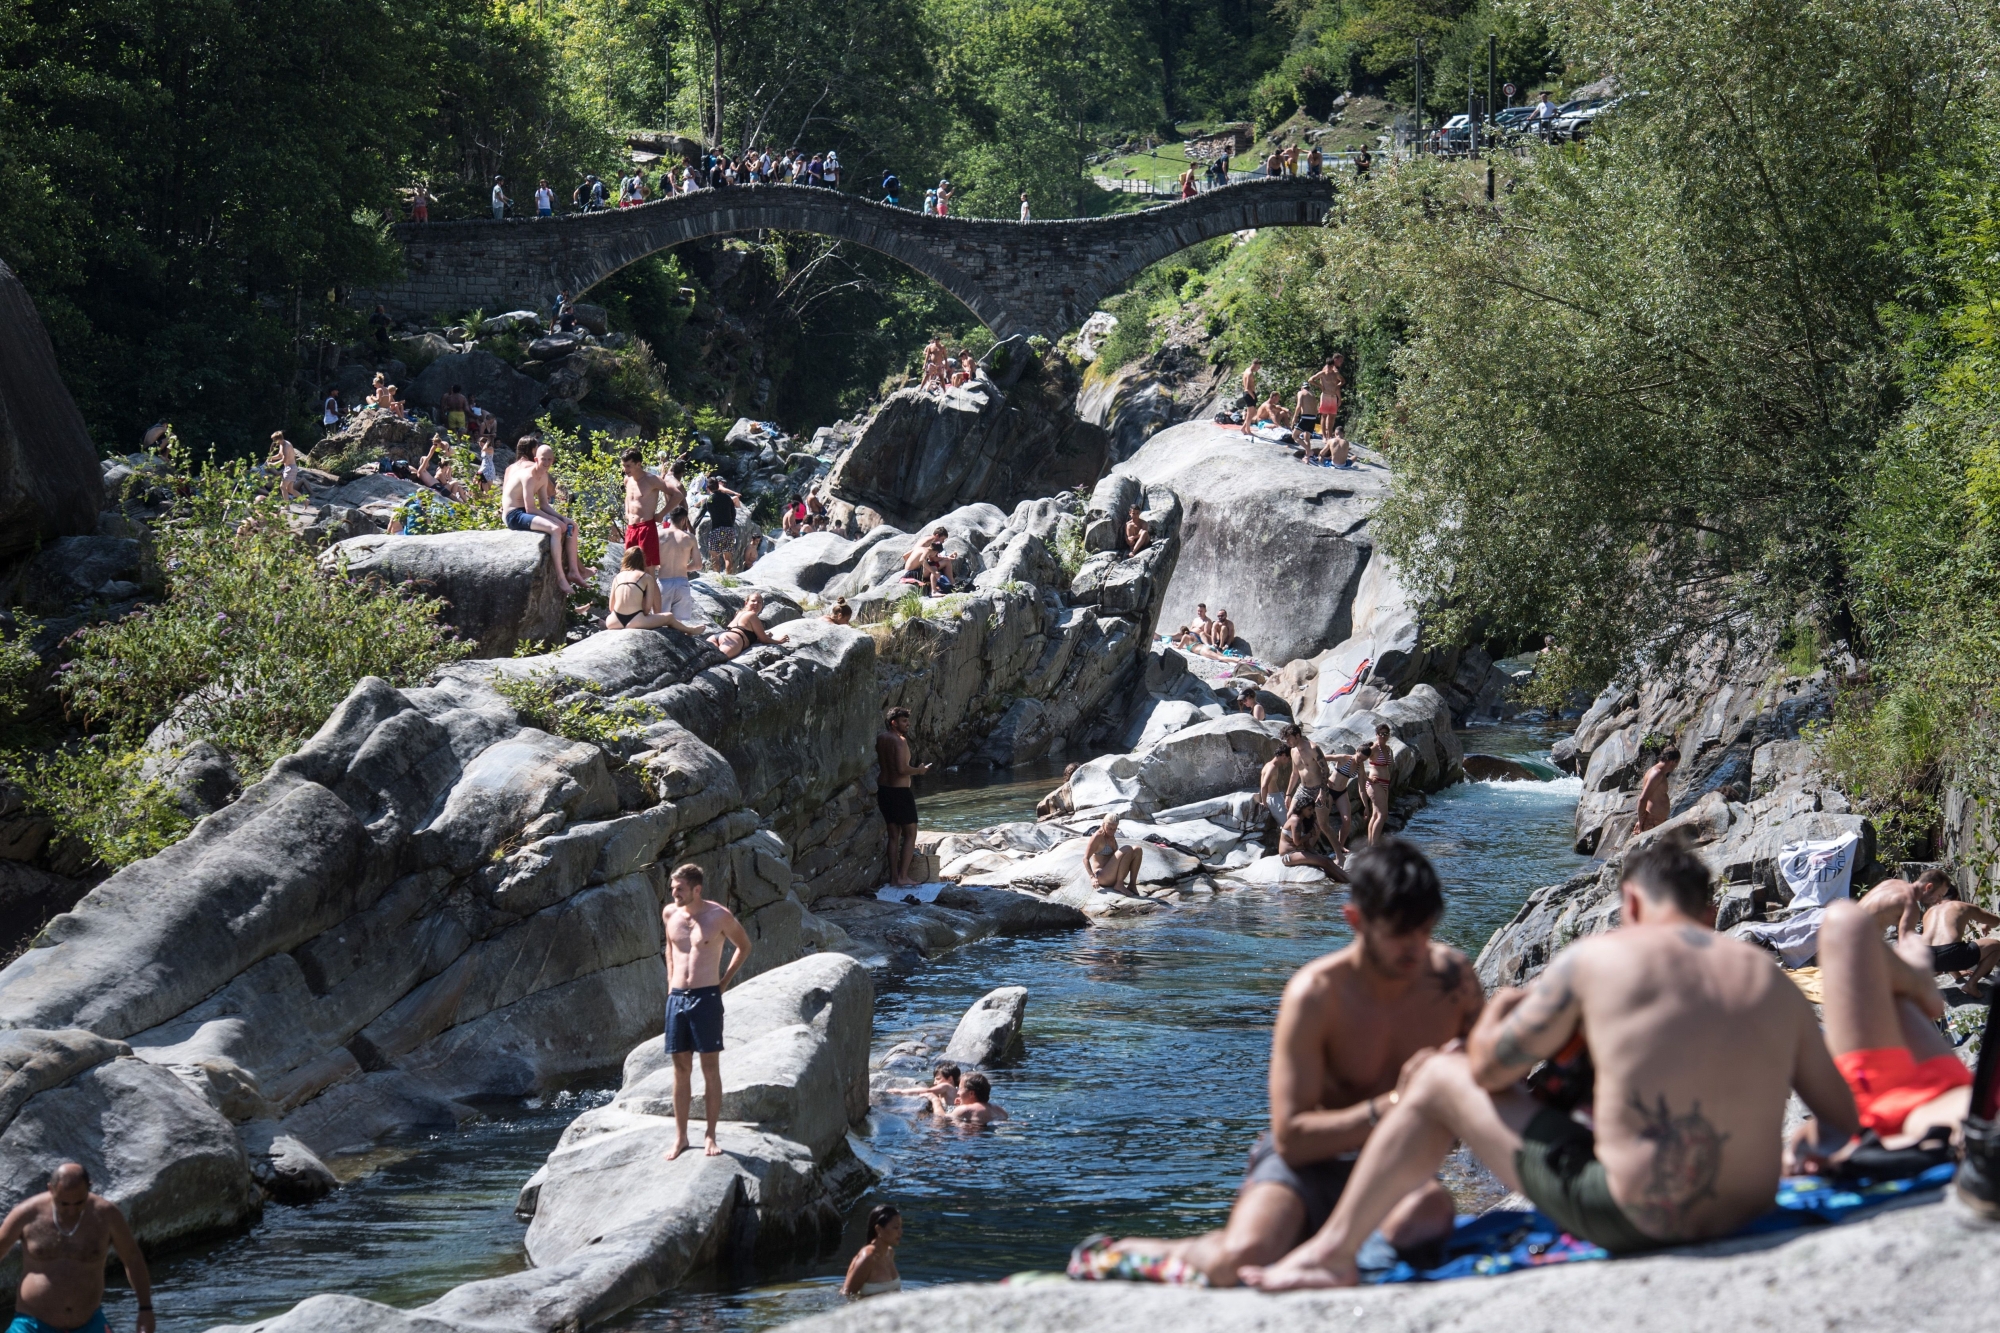 Le "Pont des Sauts" du Val Verzasca, et les eaux turquoises de la rivière sont célèbres de par le monde pour leur beauté sauvage.